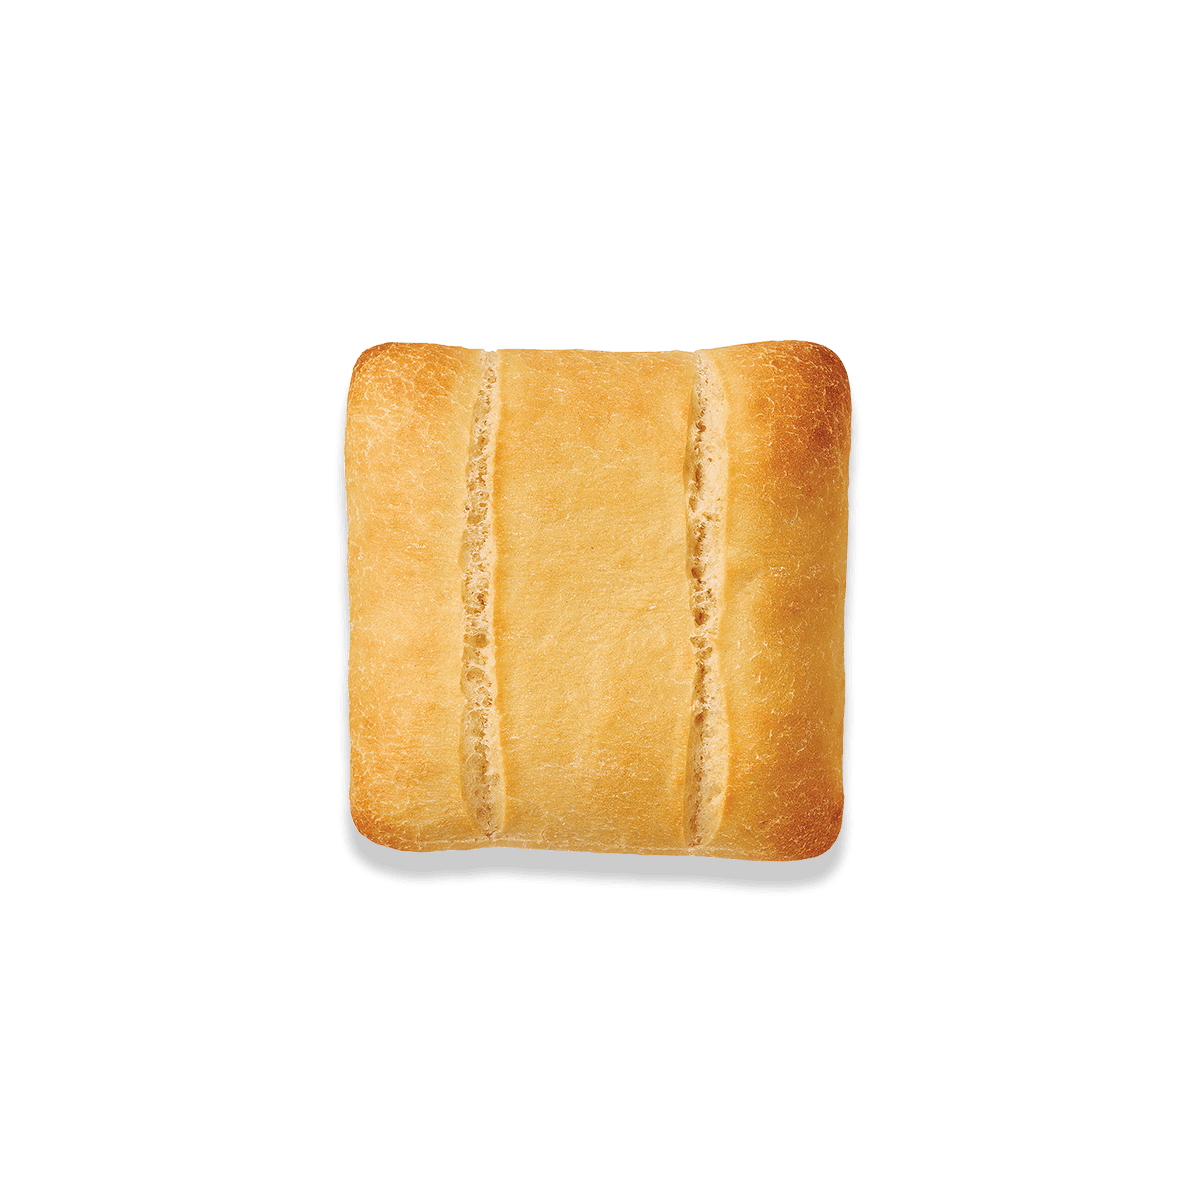 pain artisan moelleux vue de haut